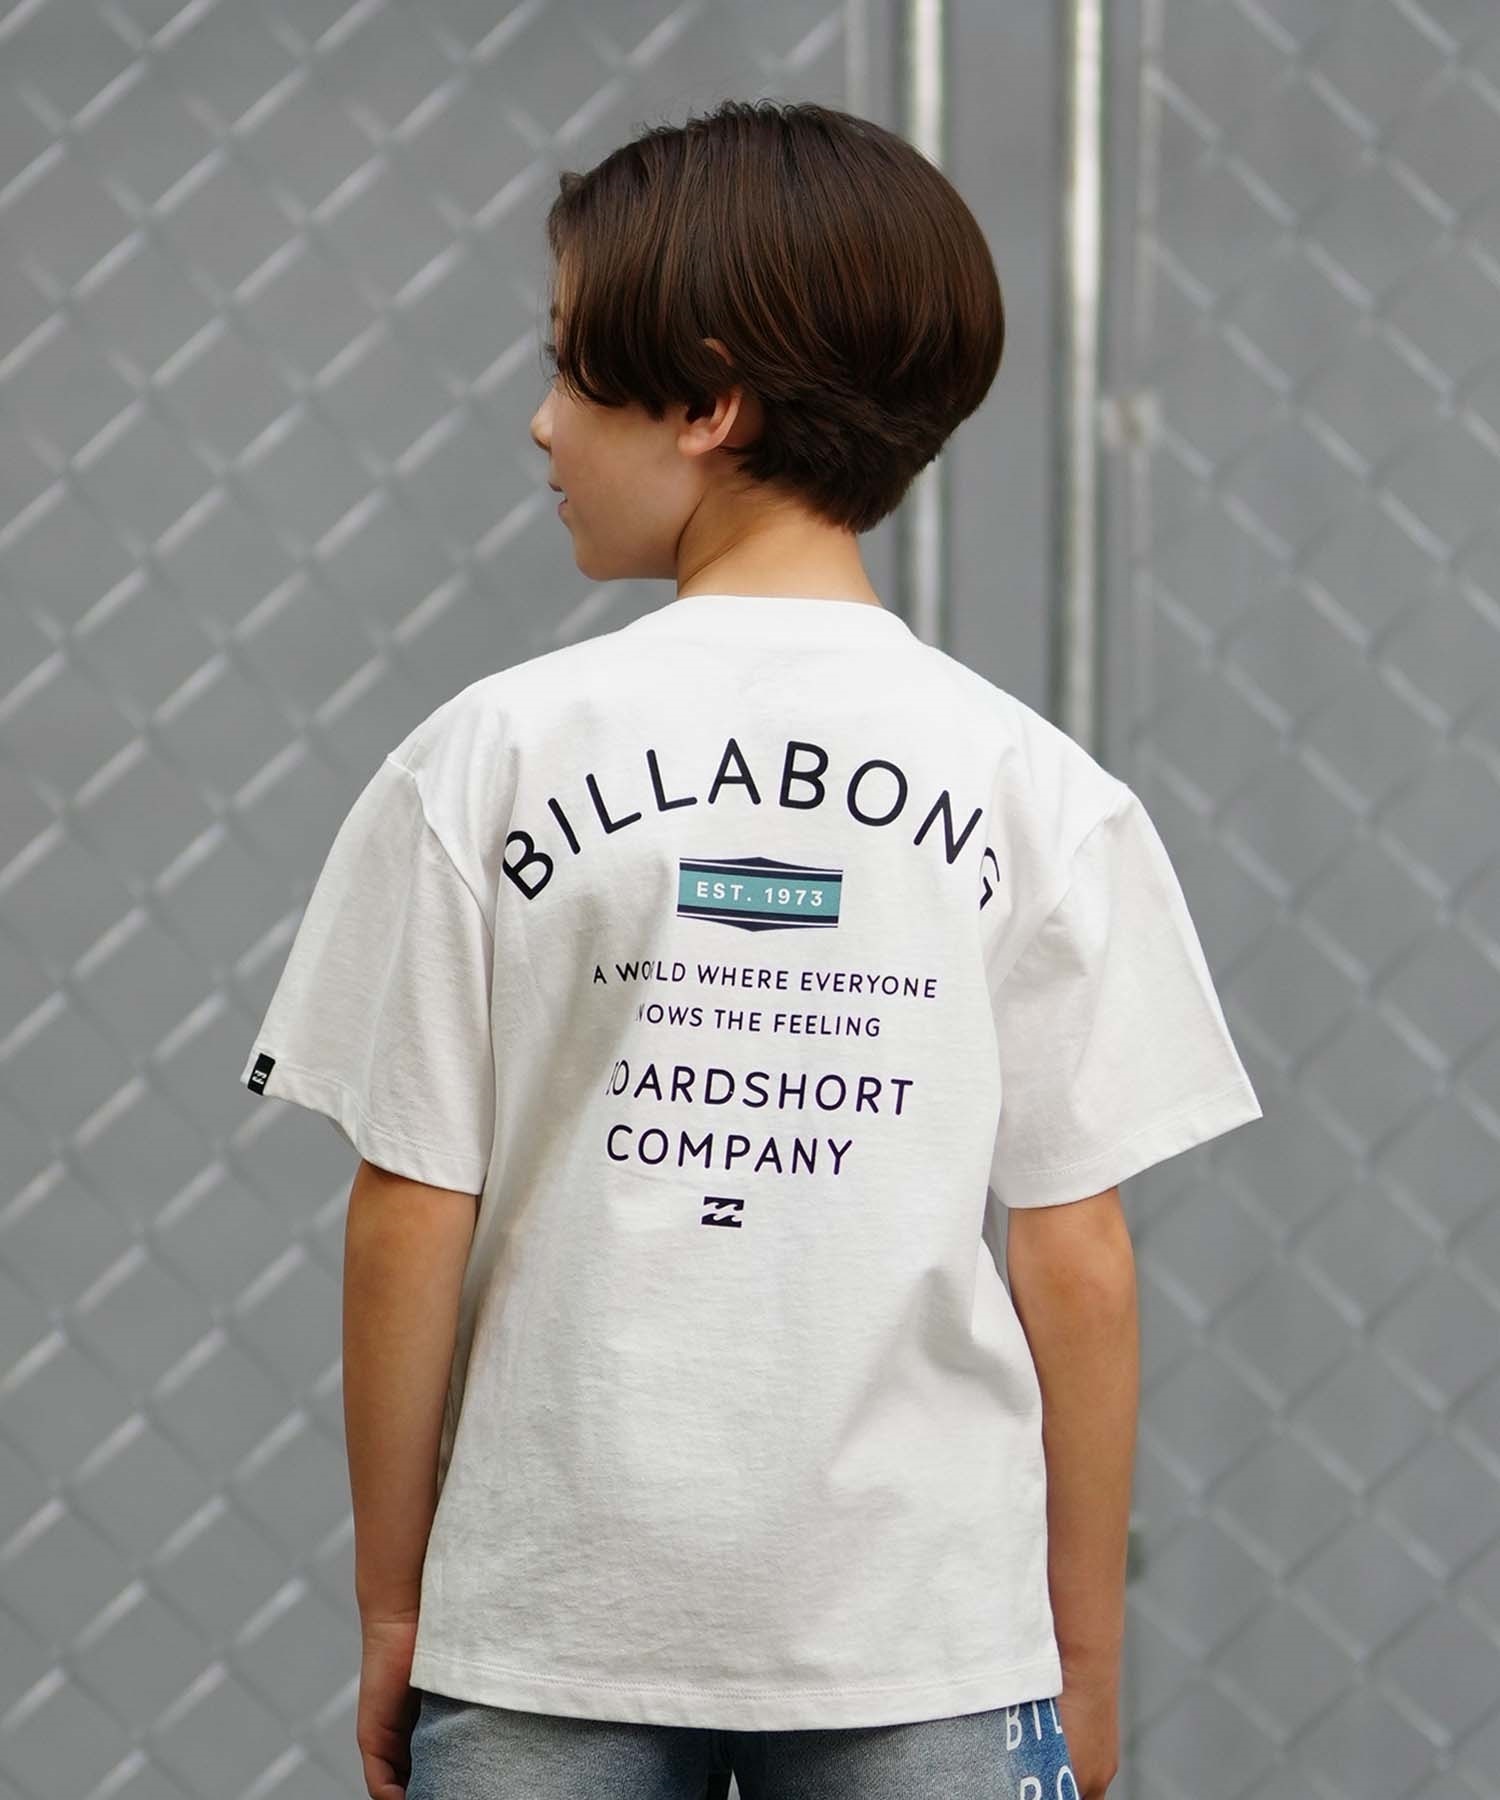 【クーポン対象】BILLABONG ビラボン PEAK キッズ 半袖 Tシャツ バックプリント BE015-205(BLK-130cm)